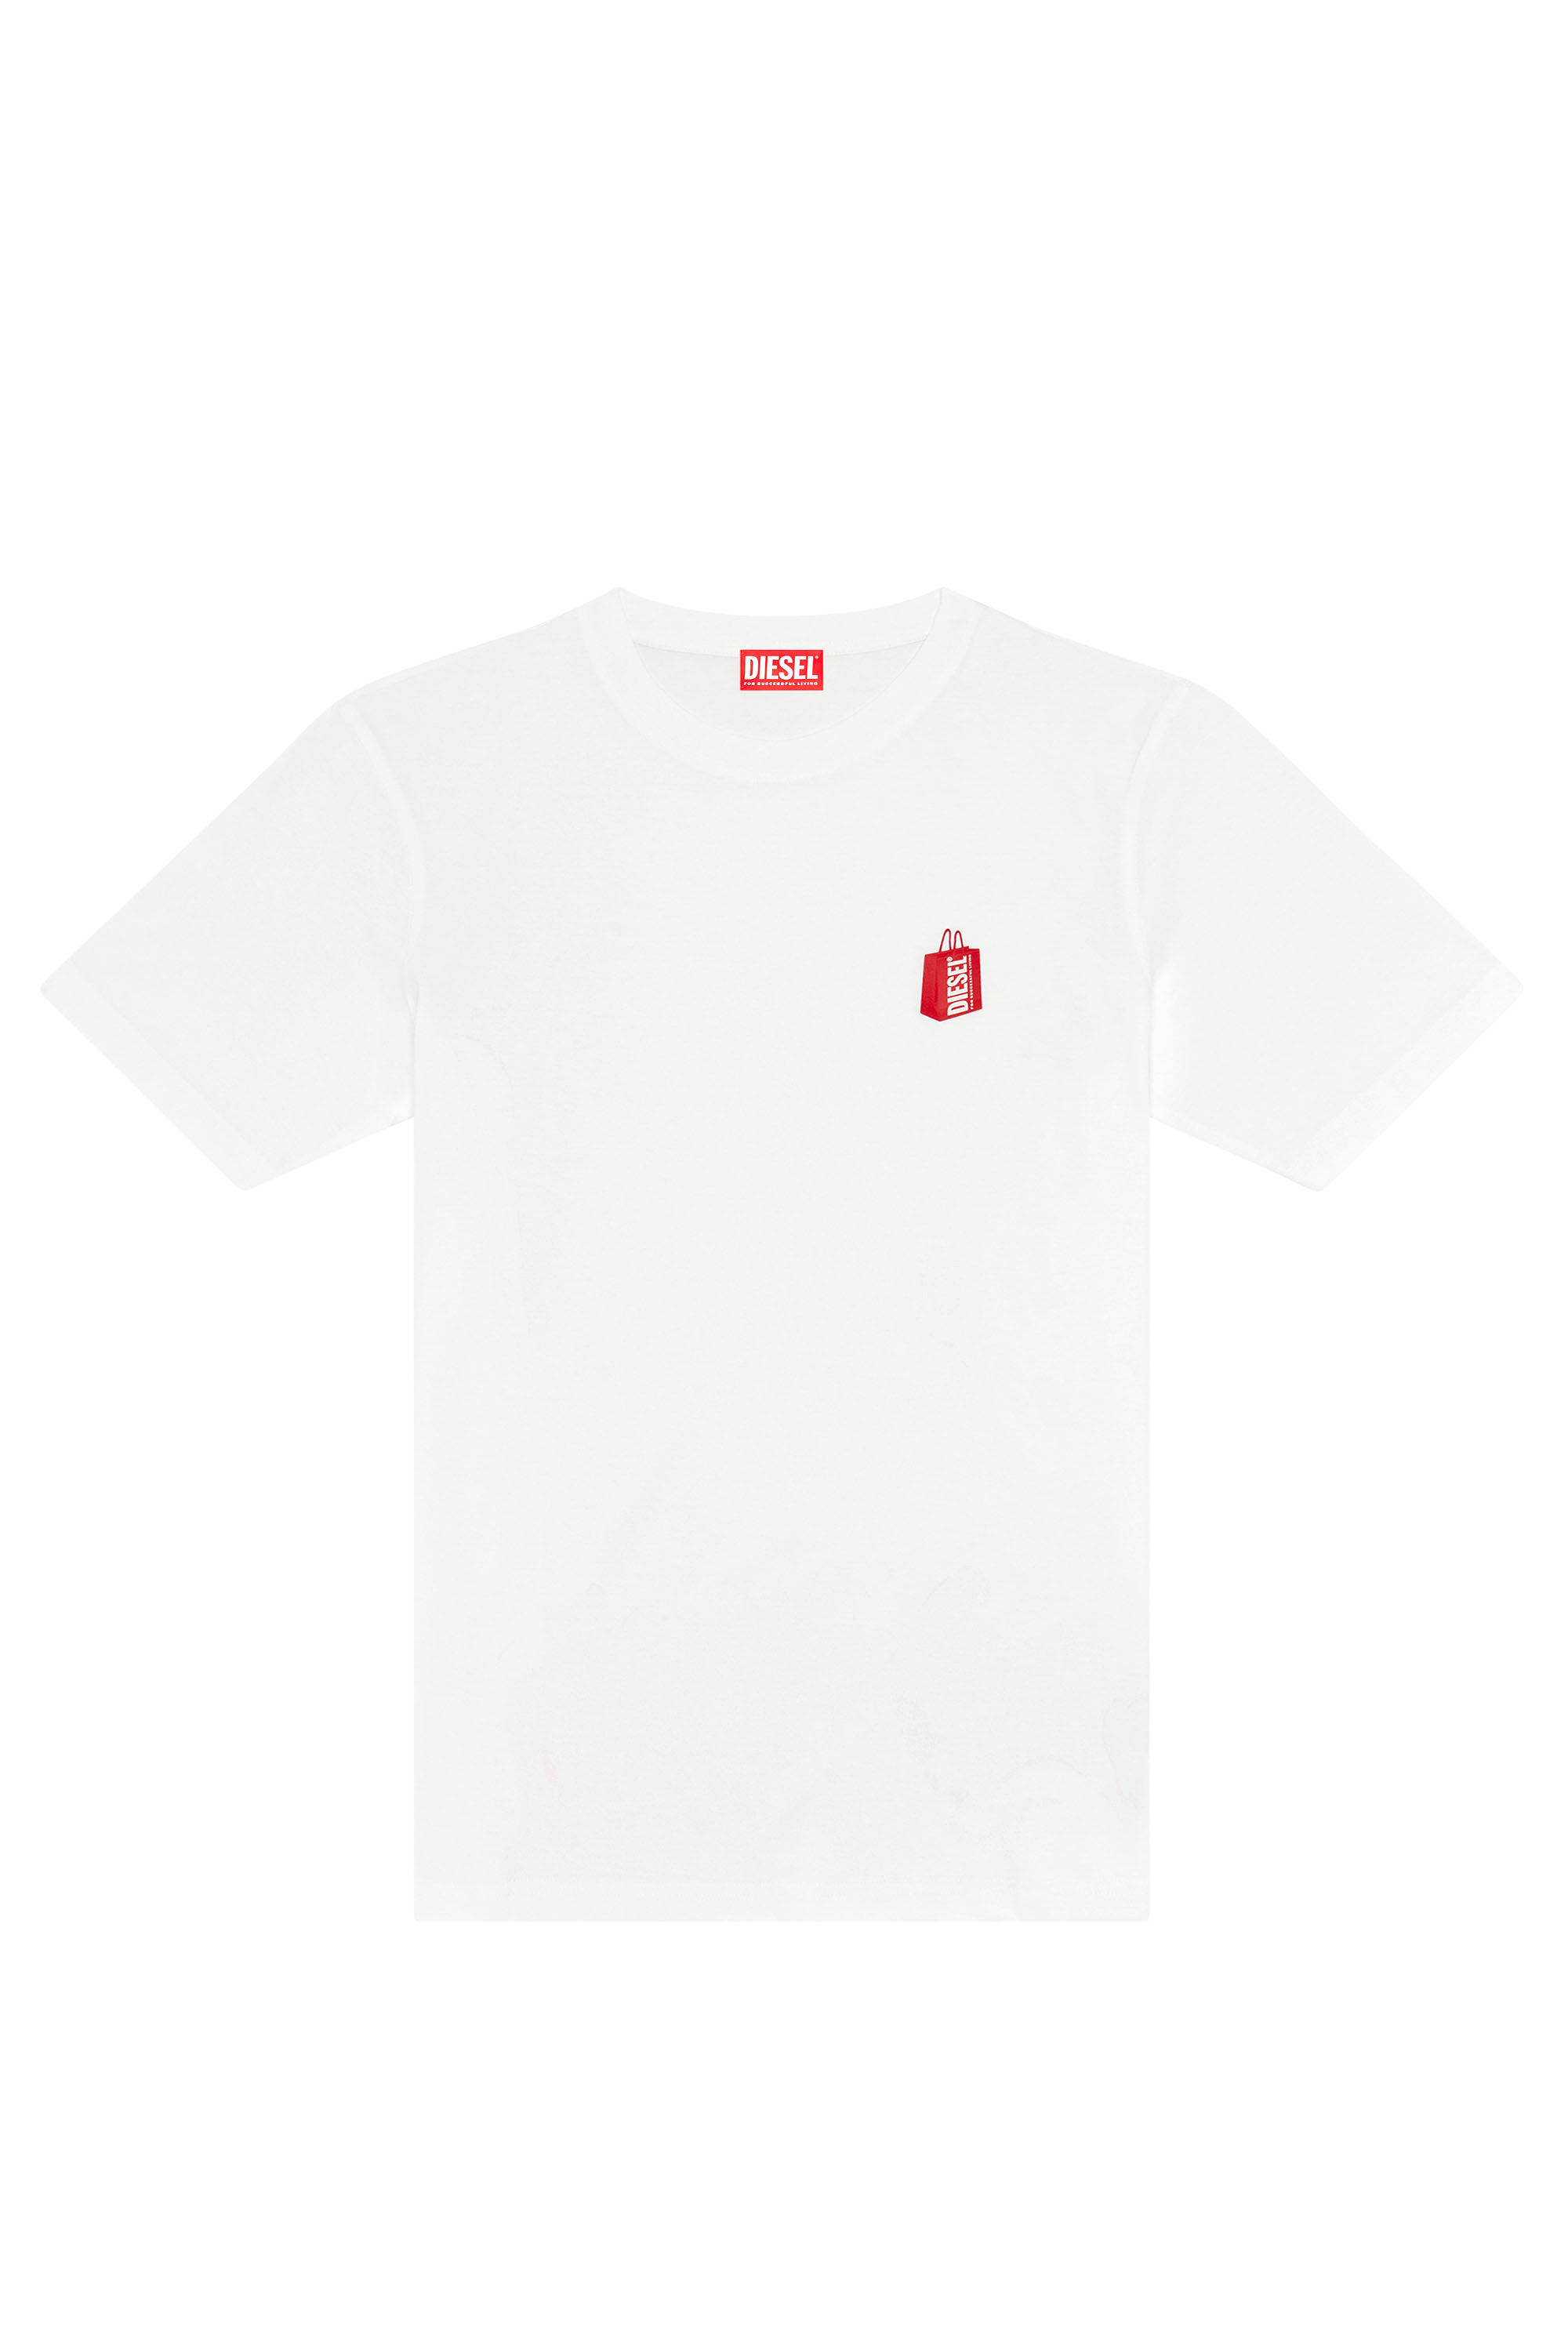 Men's T-shirt with Diesel bag print | White | Diesel